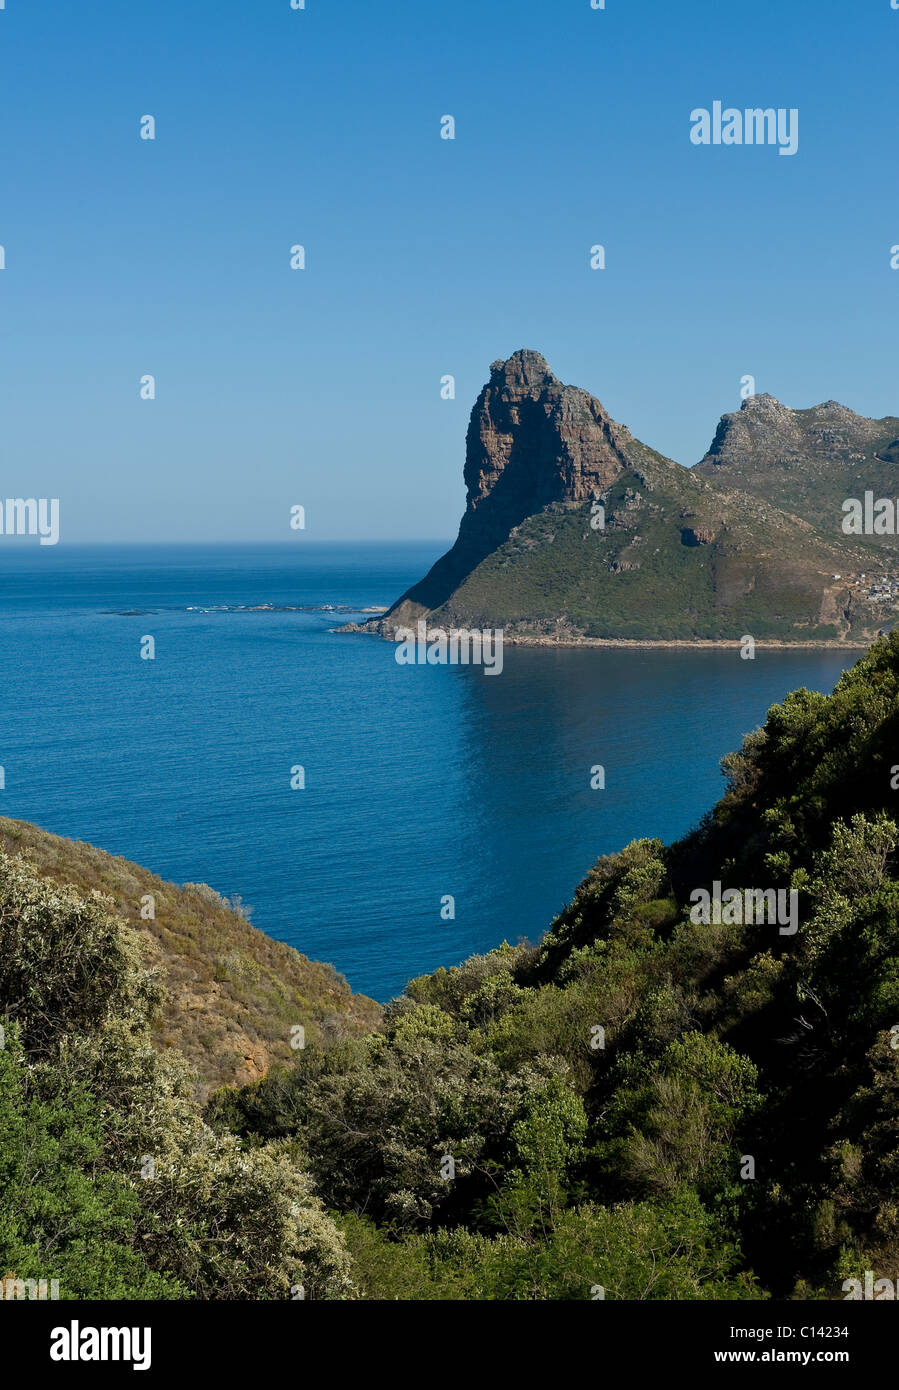 Le Sentinel Rock à Hout Bay, Cape Town, Afrique du Sud Banque D'Images